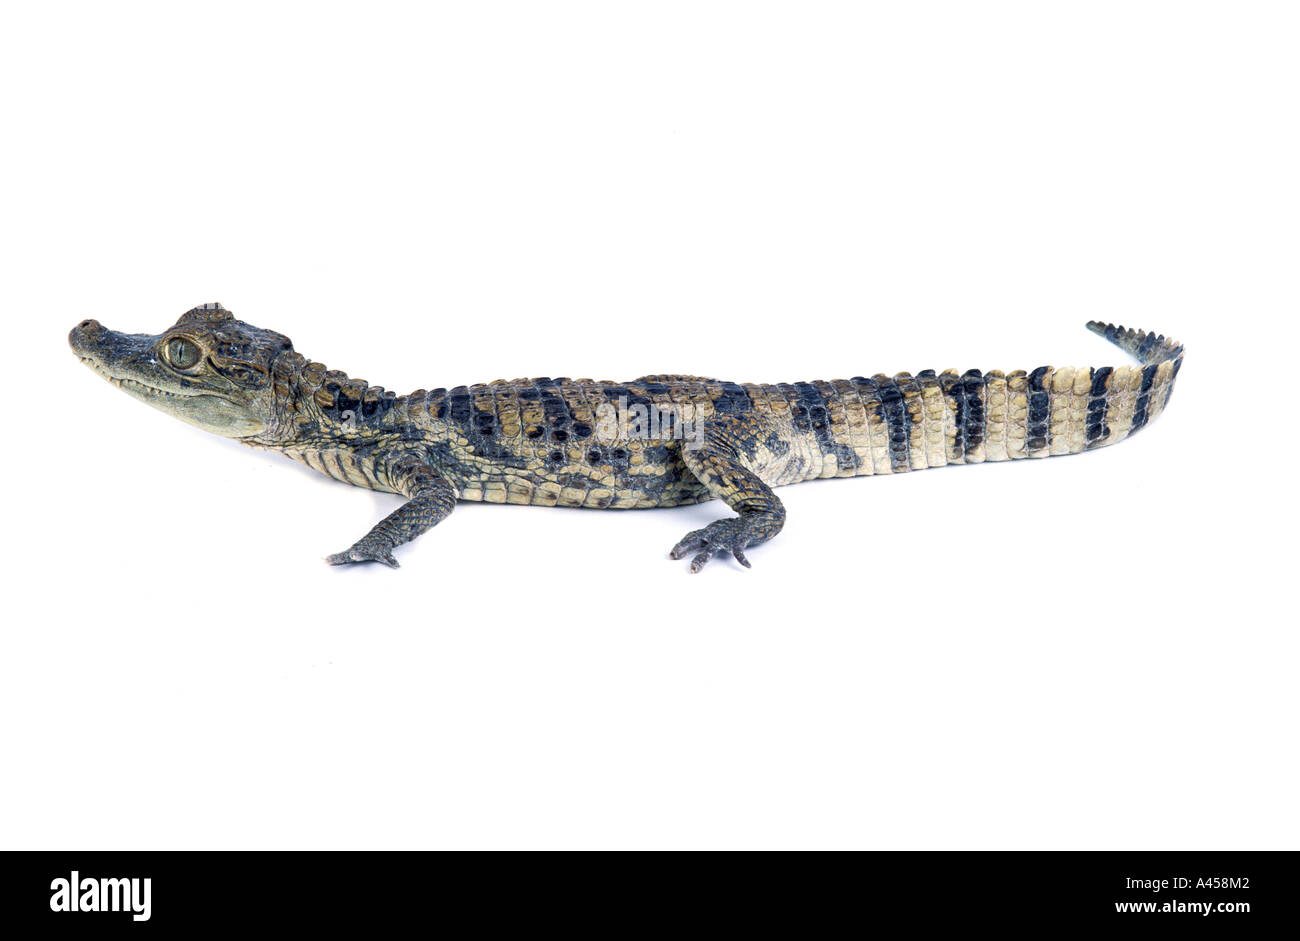 Crocodile du Nil Crocodylus niloticus Crocodile du Nil de l'Afrique du Sud nature animaux ovipares reptile africain de l'eau de la rivière Grand vert face portrait danger dangereux Banque D'Images